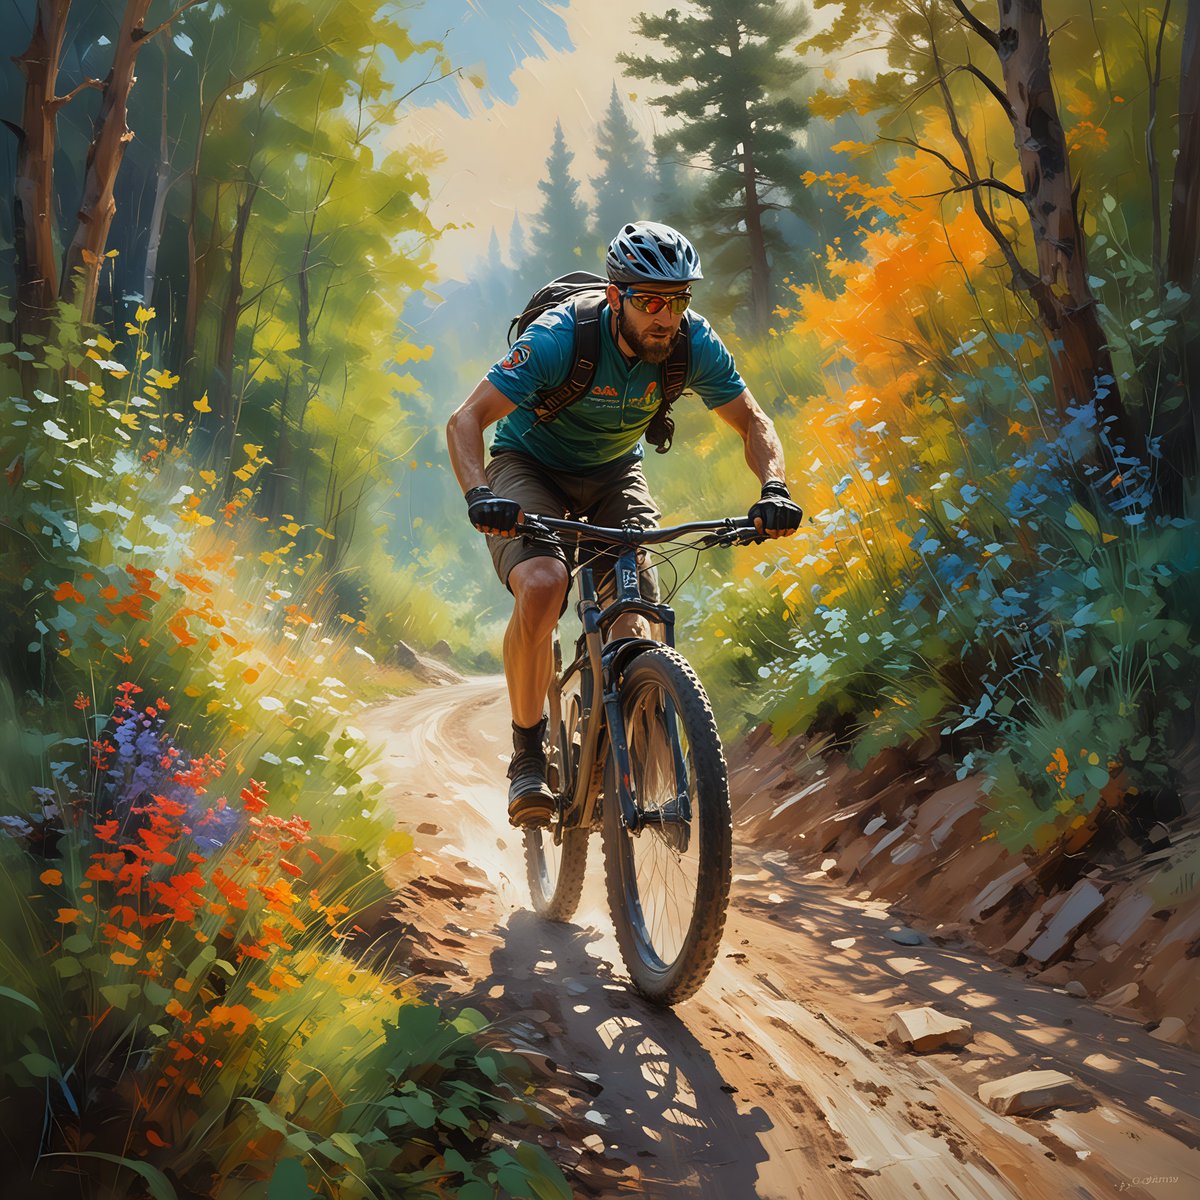 Race Biker #art #artist #artwork #drawing #painting #artlover #ArtLovers #wow #biker